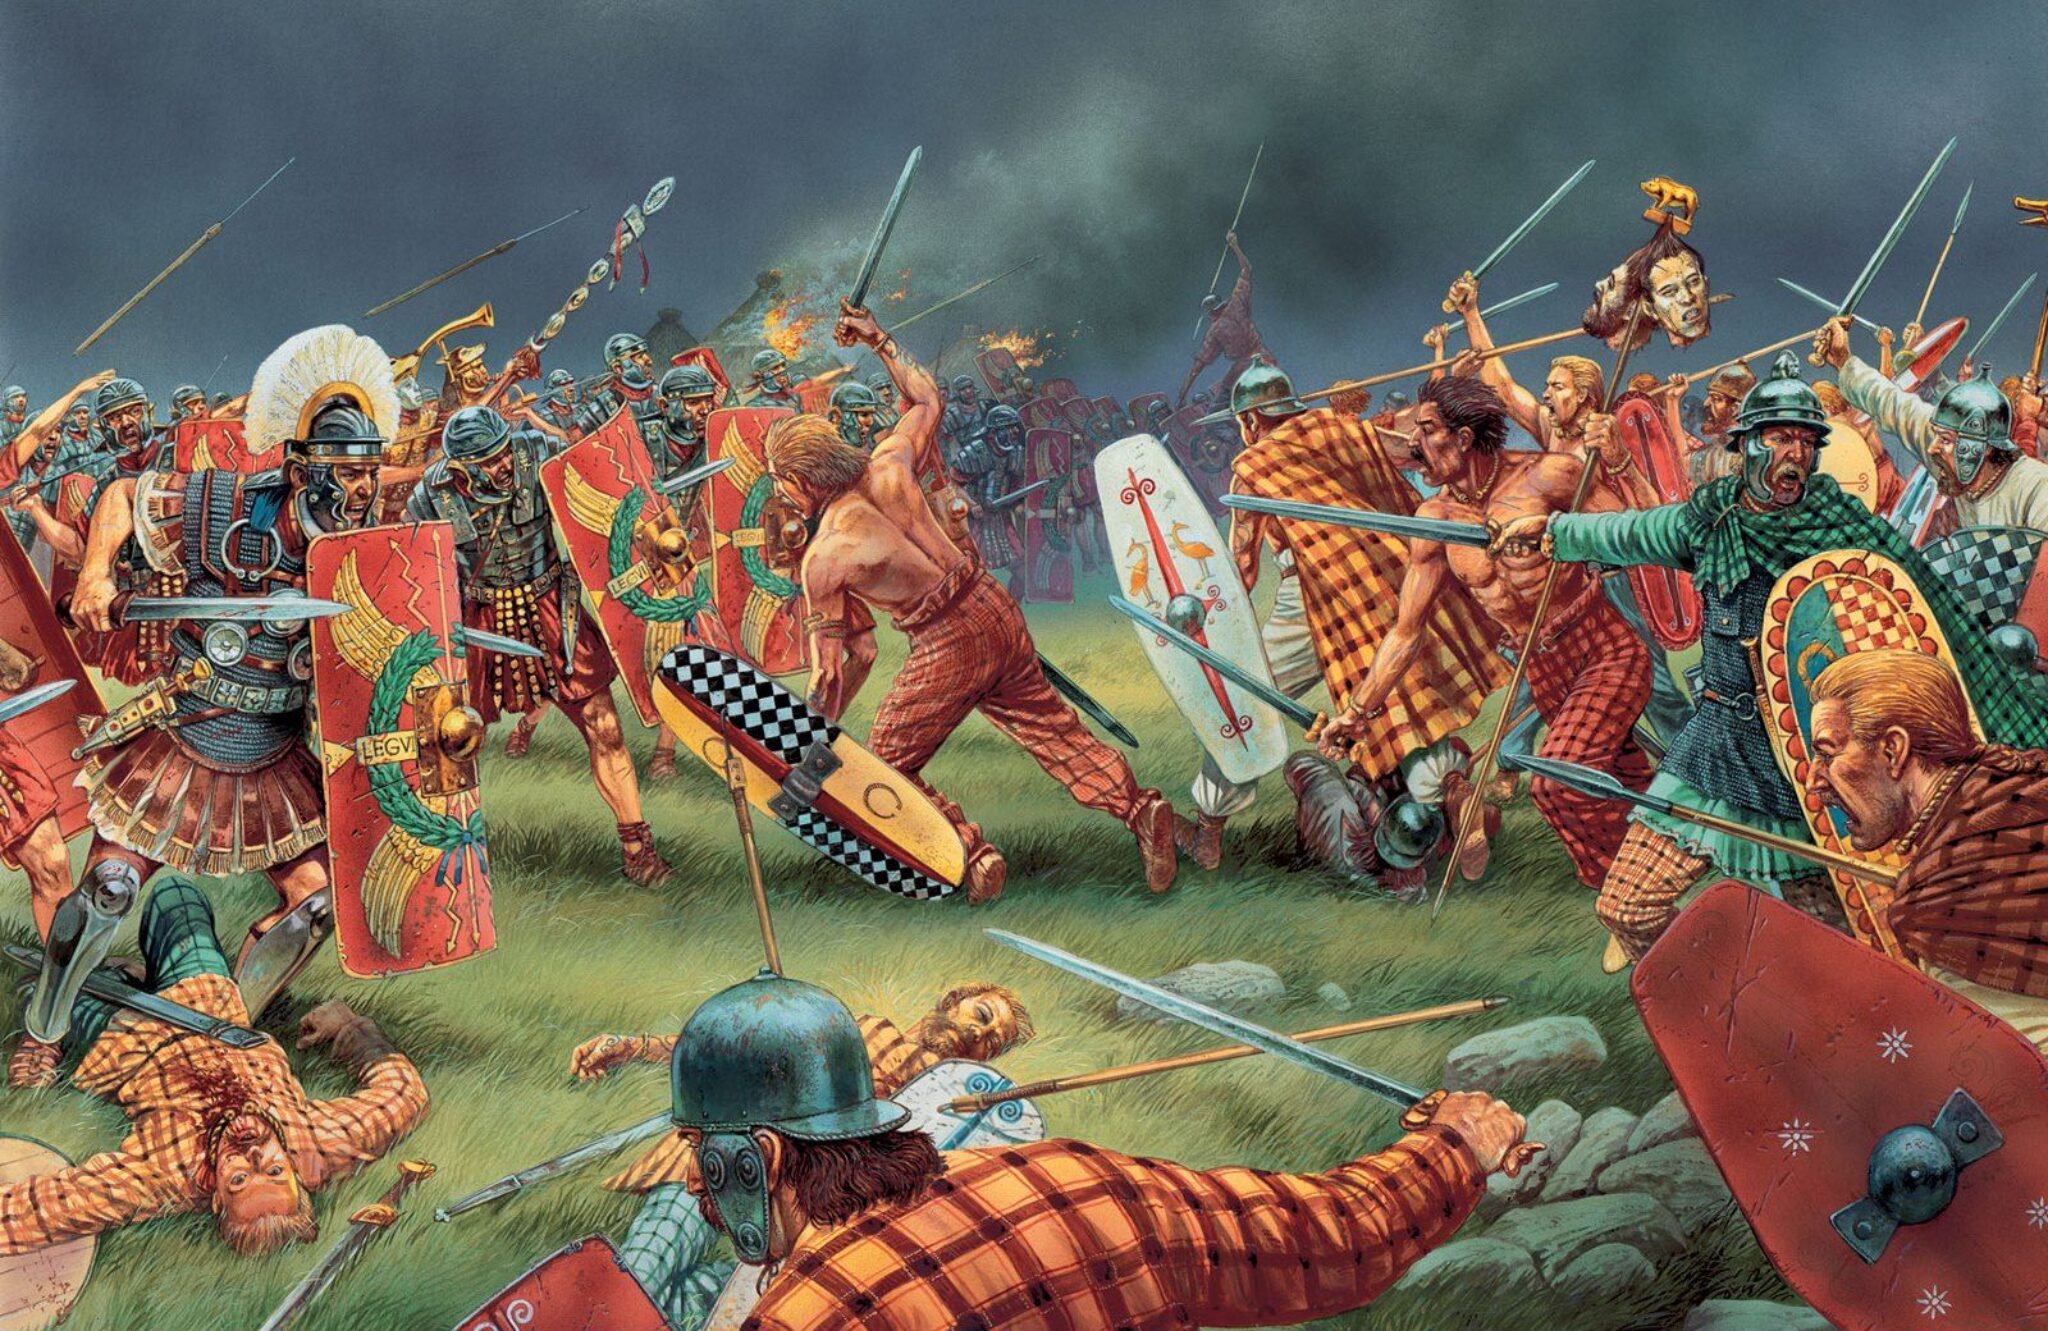 Век нашествия галлов. Римское завоевание Британии. Питер Деннис художник кельты галлы. Римляне против кельтов.